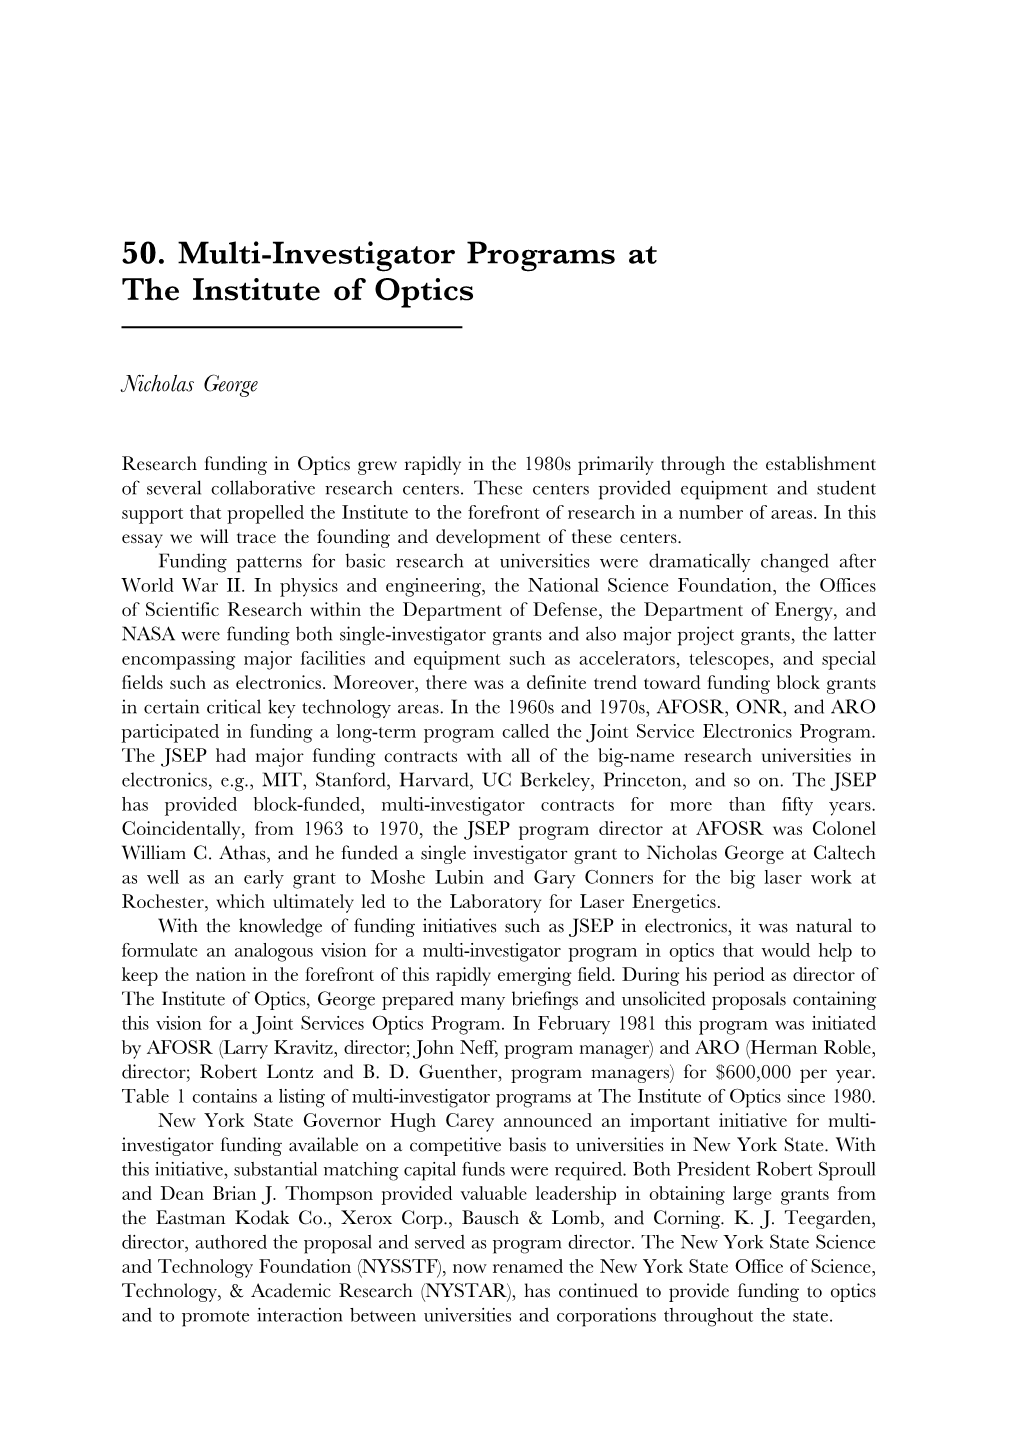 50. Multi-Investigator Programs at the Institute of Optics